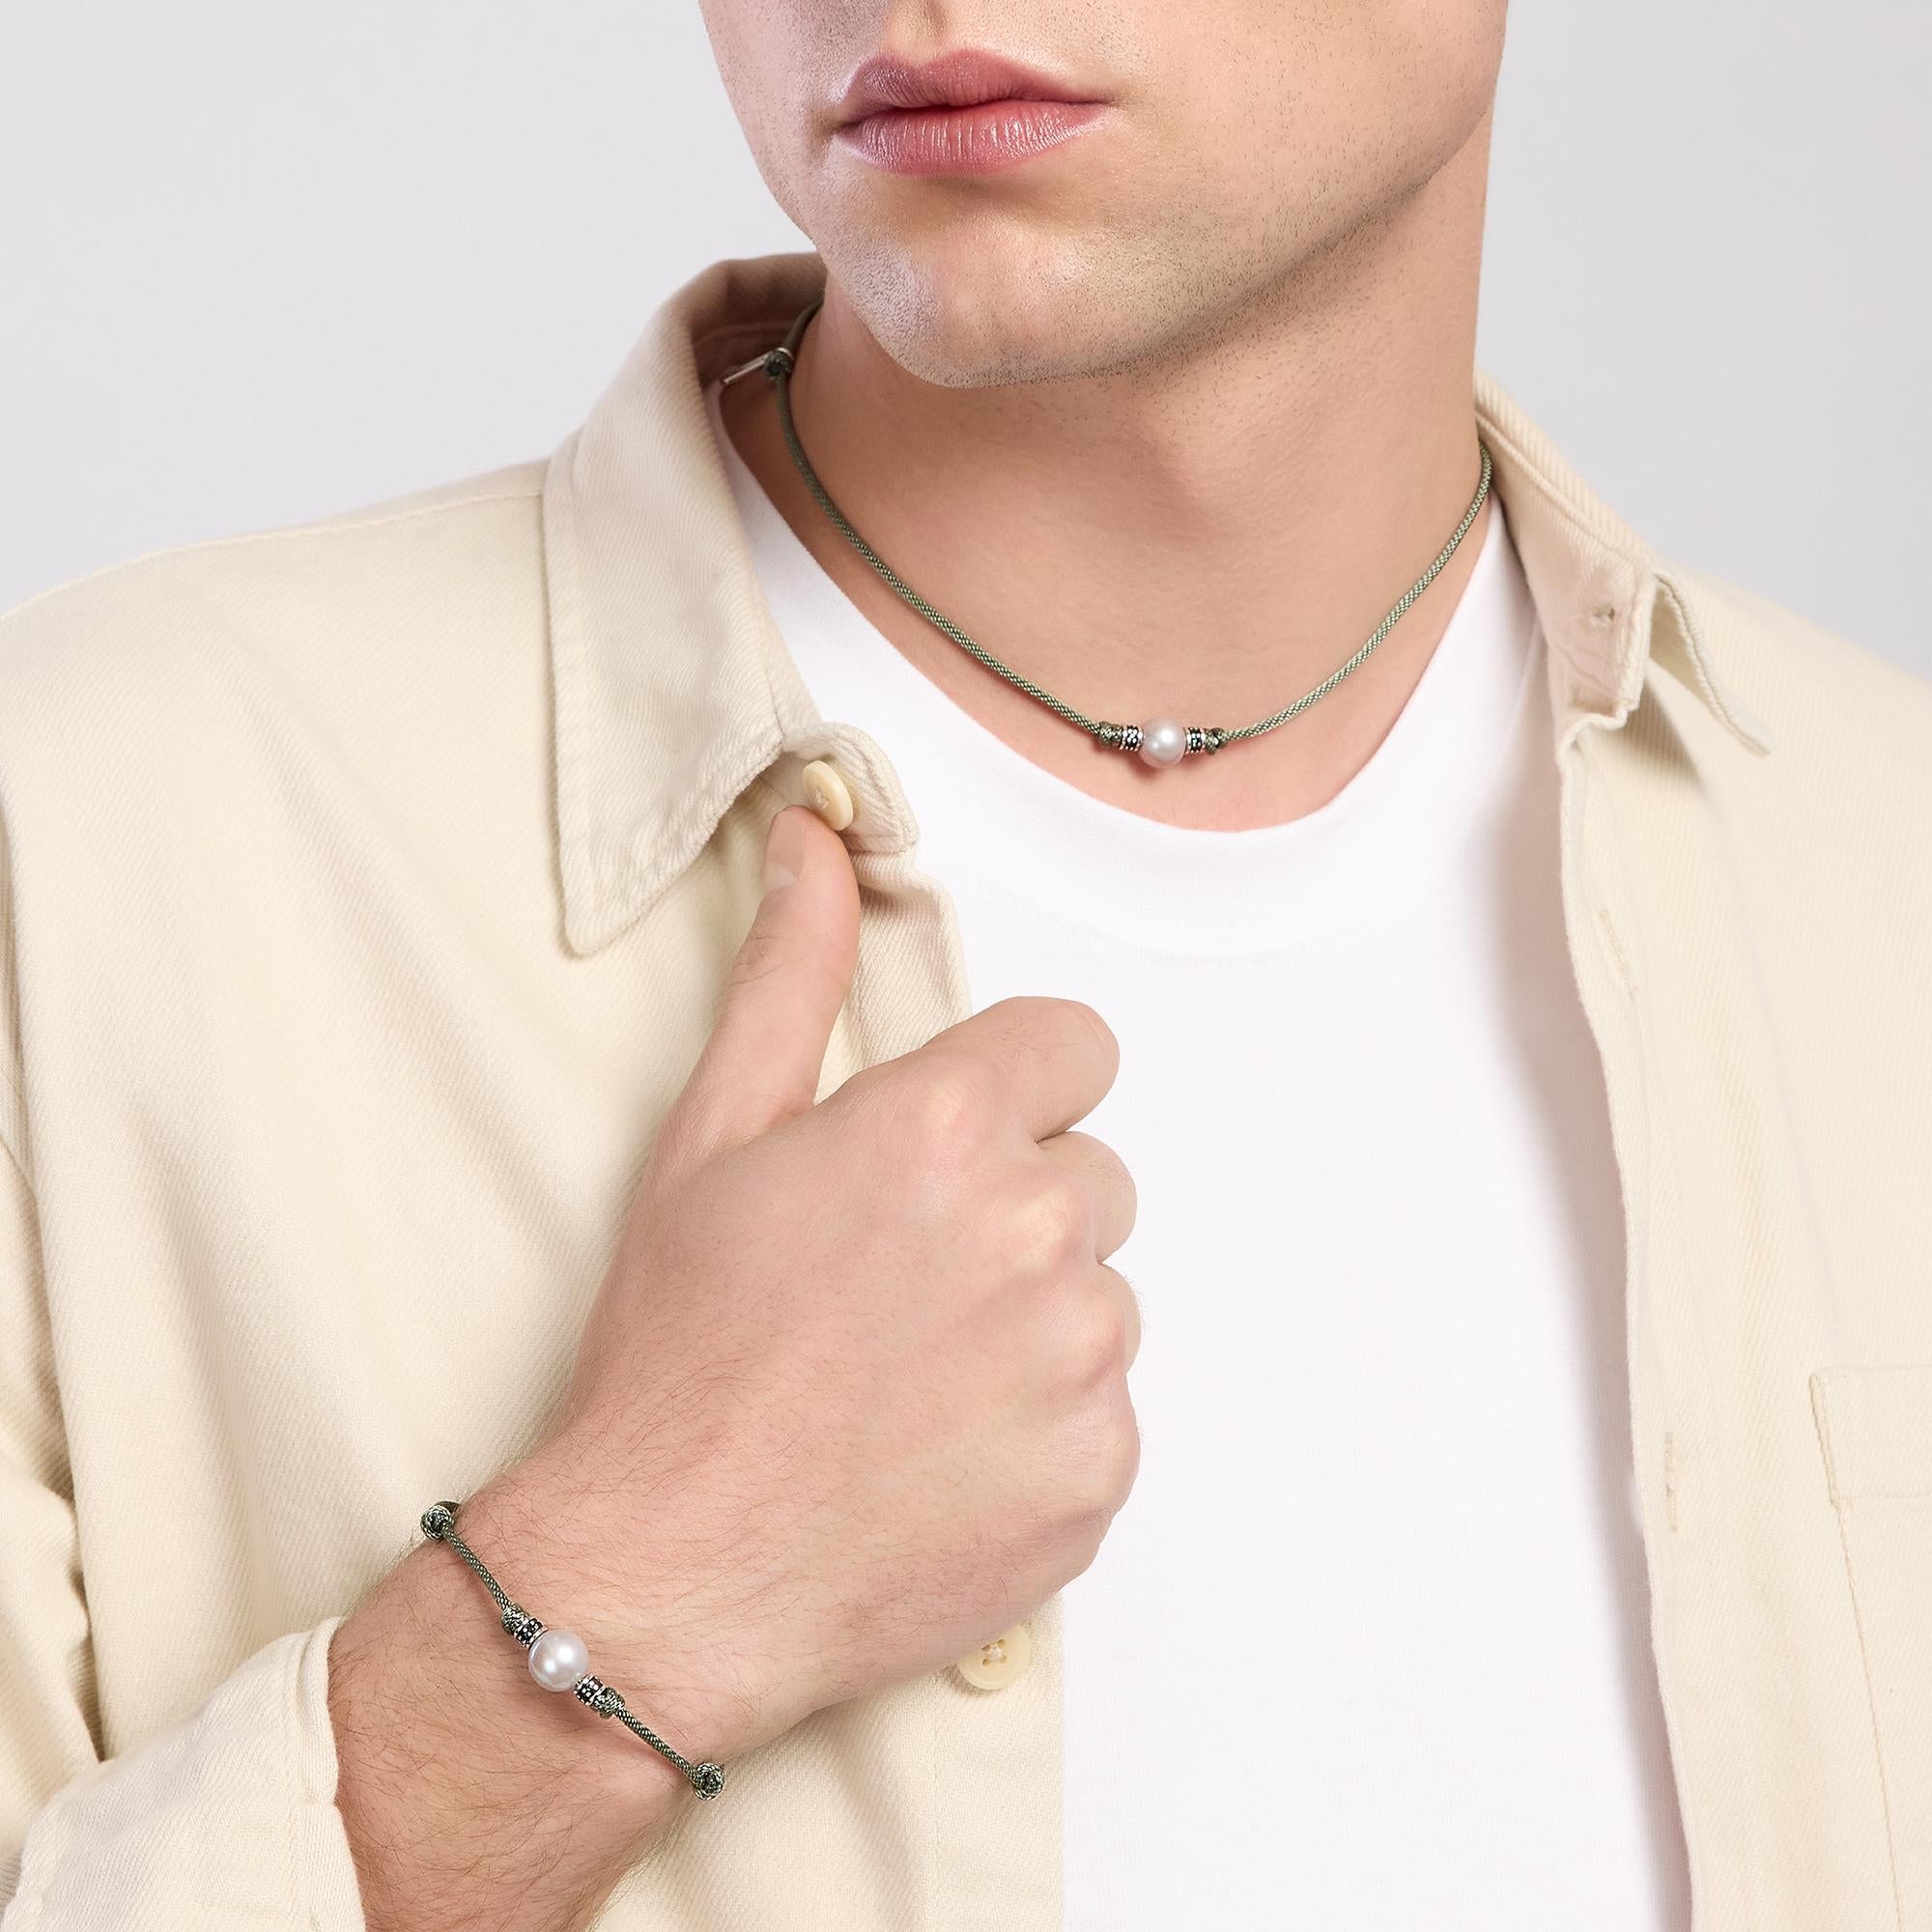 Mabina Homme - Bracelet avec cordon vert et perle grise TROPICAL - 533721